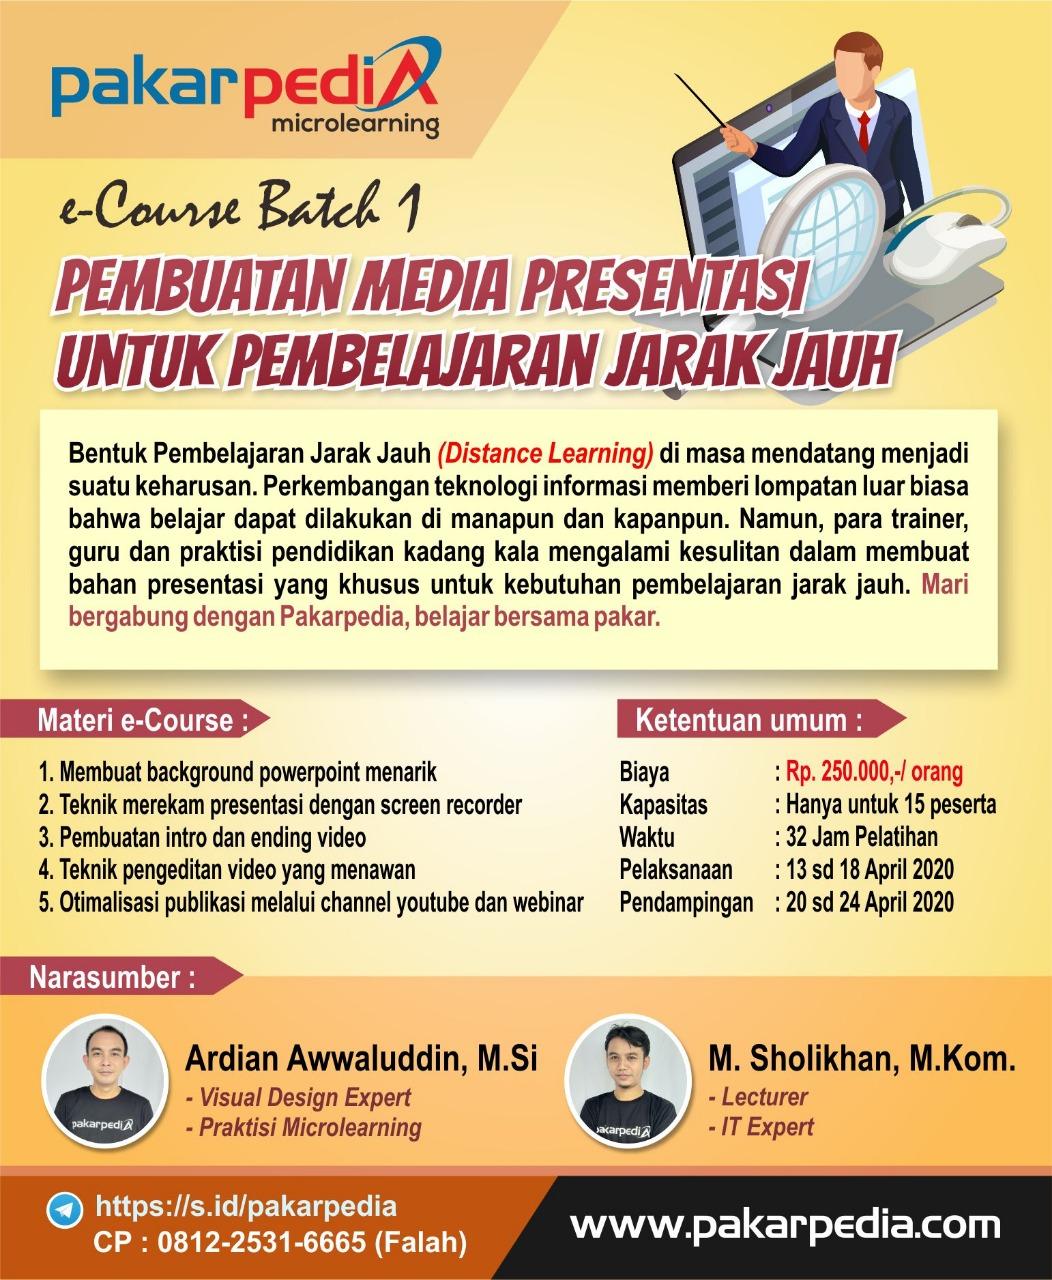 Persiapkan diri dalam Pelatihan Jarak Jauh (DJJ), WI BDK Makassar ikuti e-Course Pembuatan Media DJJ